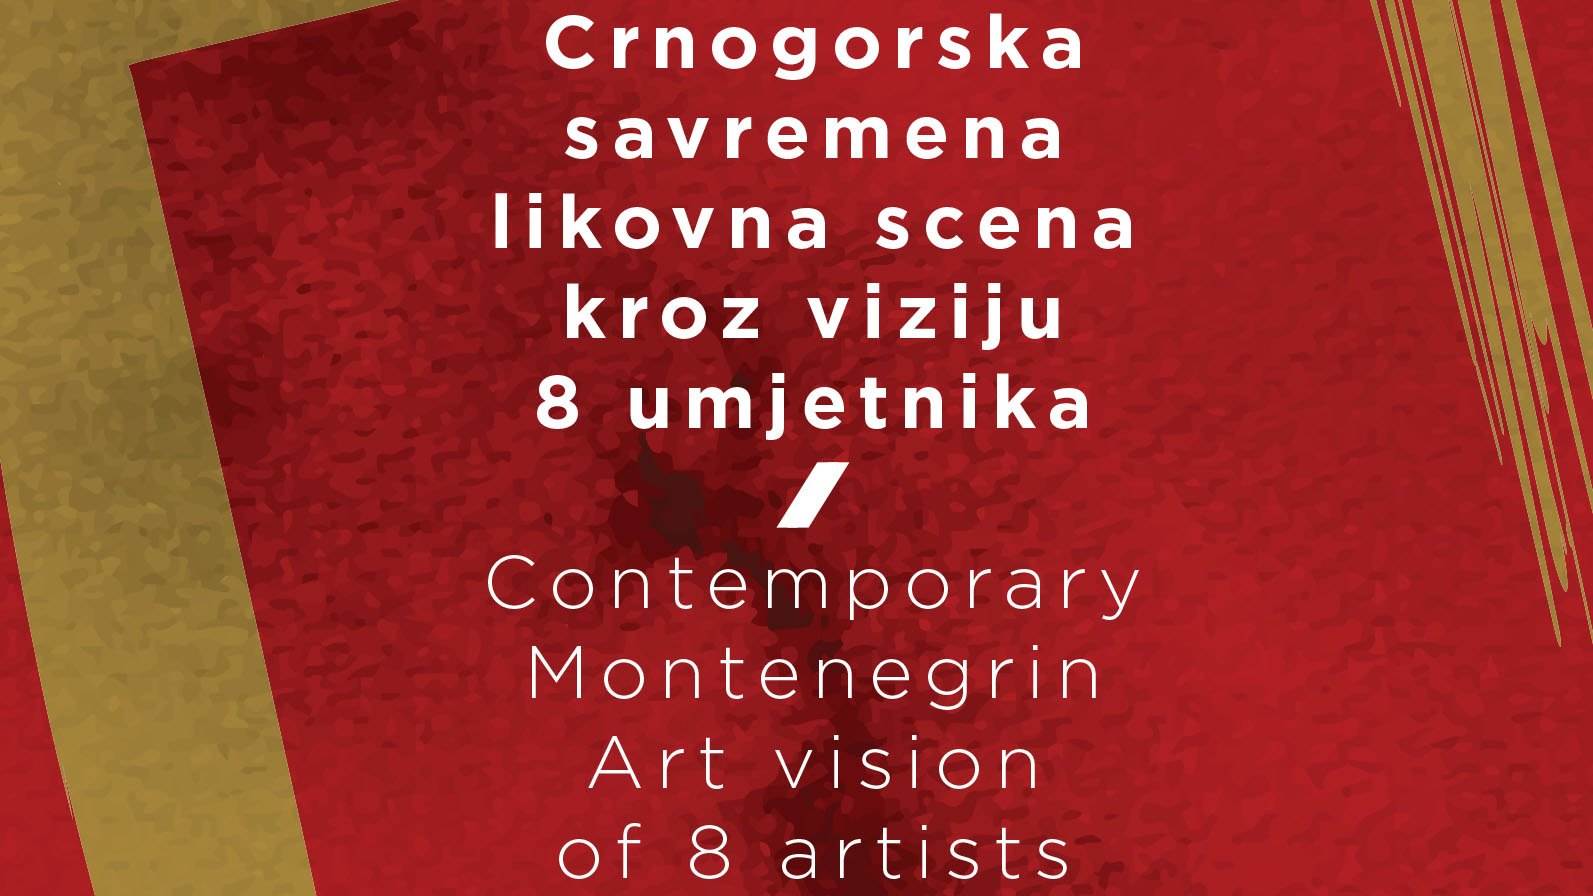  Izložba Crnogorska savremena likovna scena u Portu 